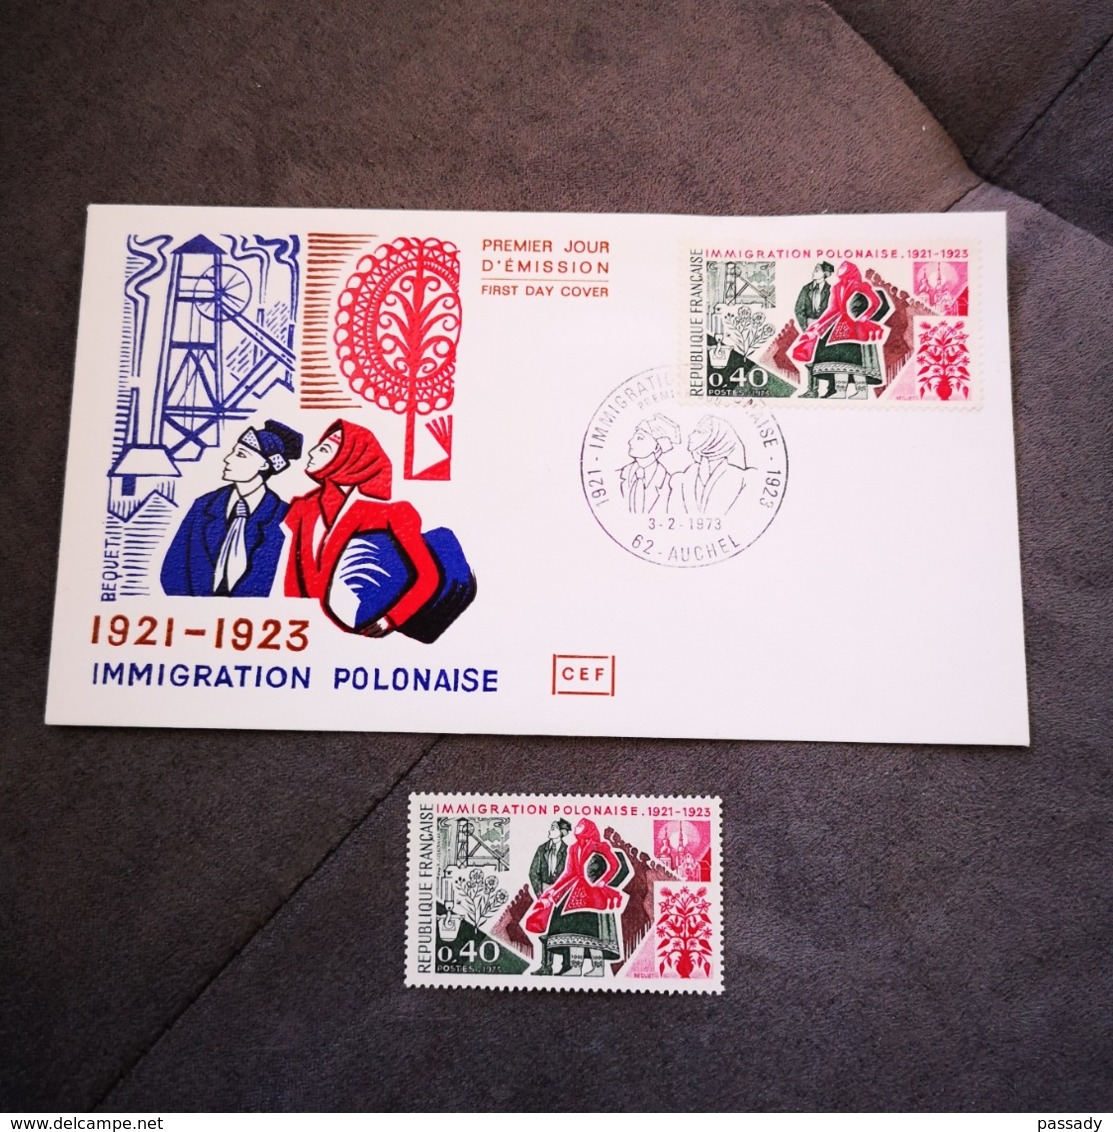 FRANCE CEF 1 Enveloppe 1er Premier Jour + 1 Timbre IMMIGRATION POLONAISE 1973 - Collection Timbre - FDC